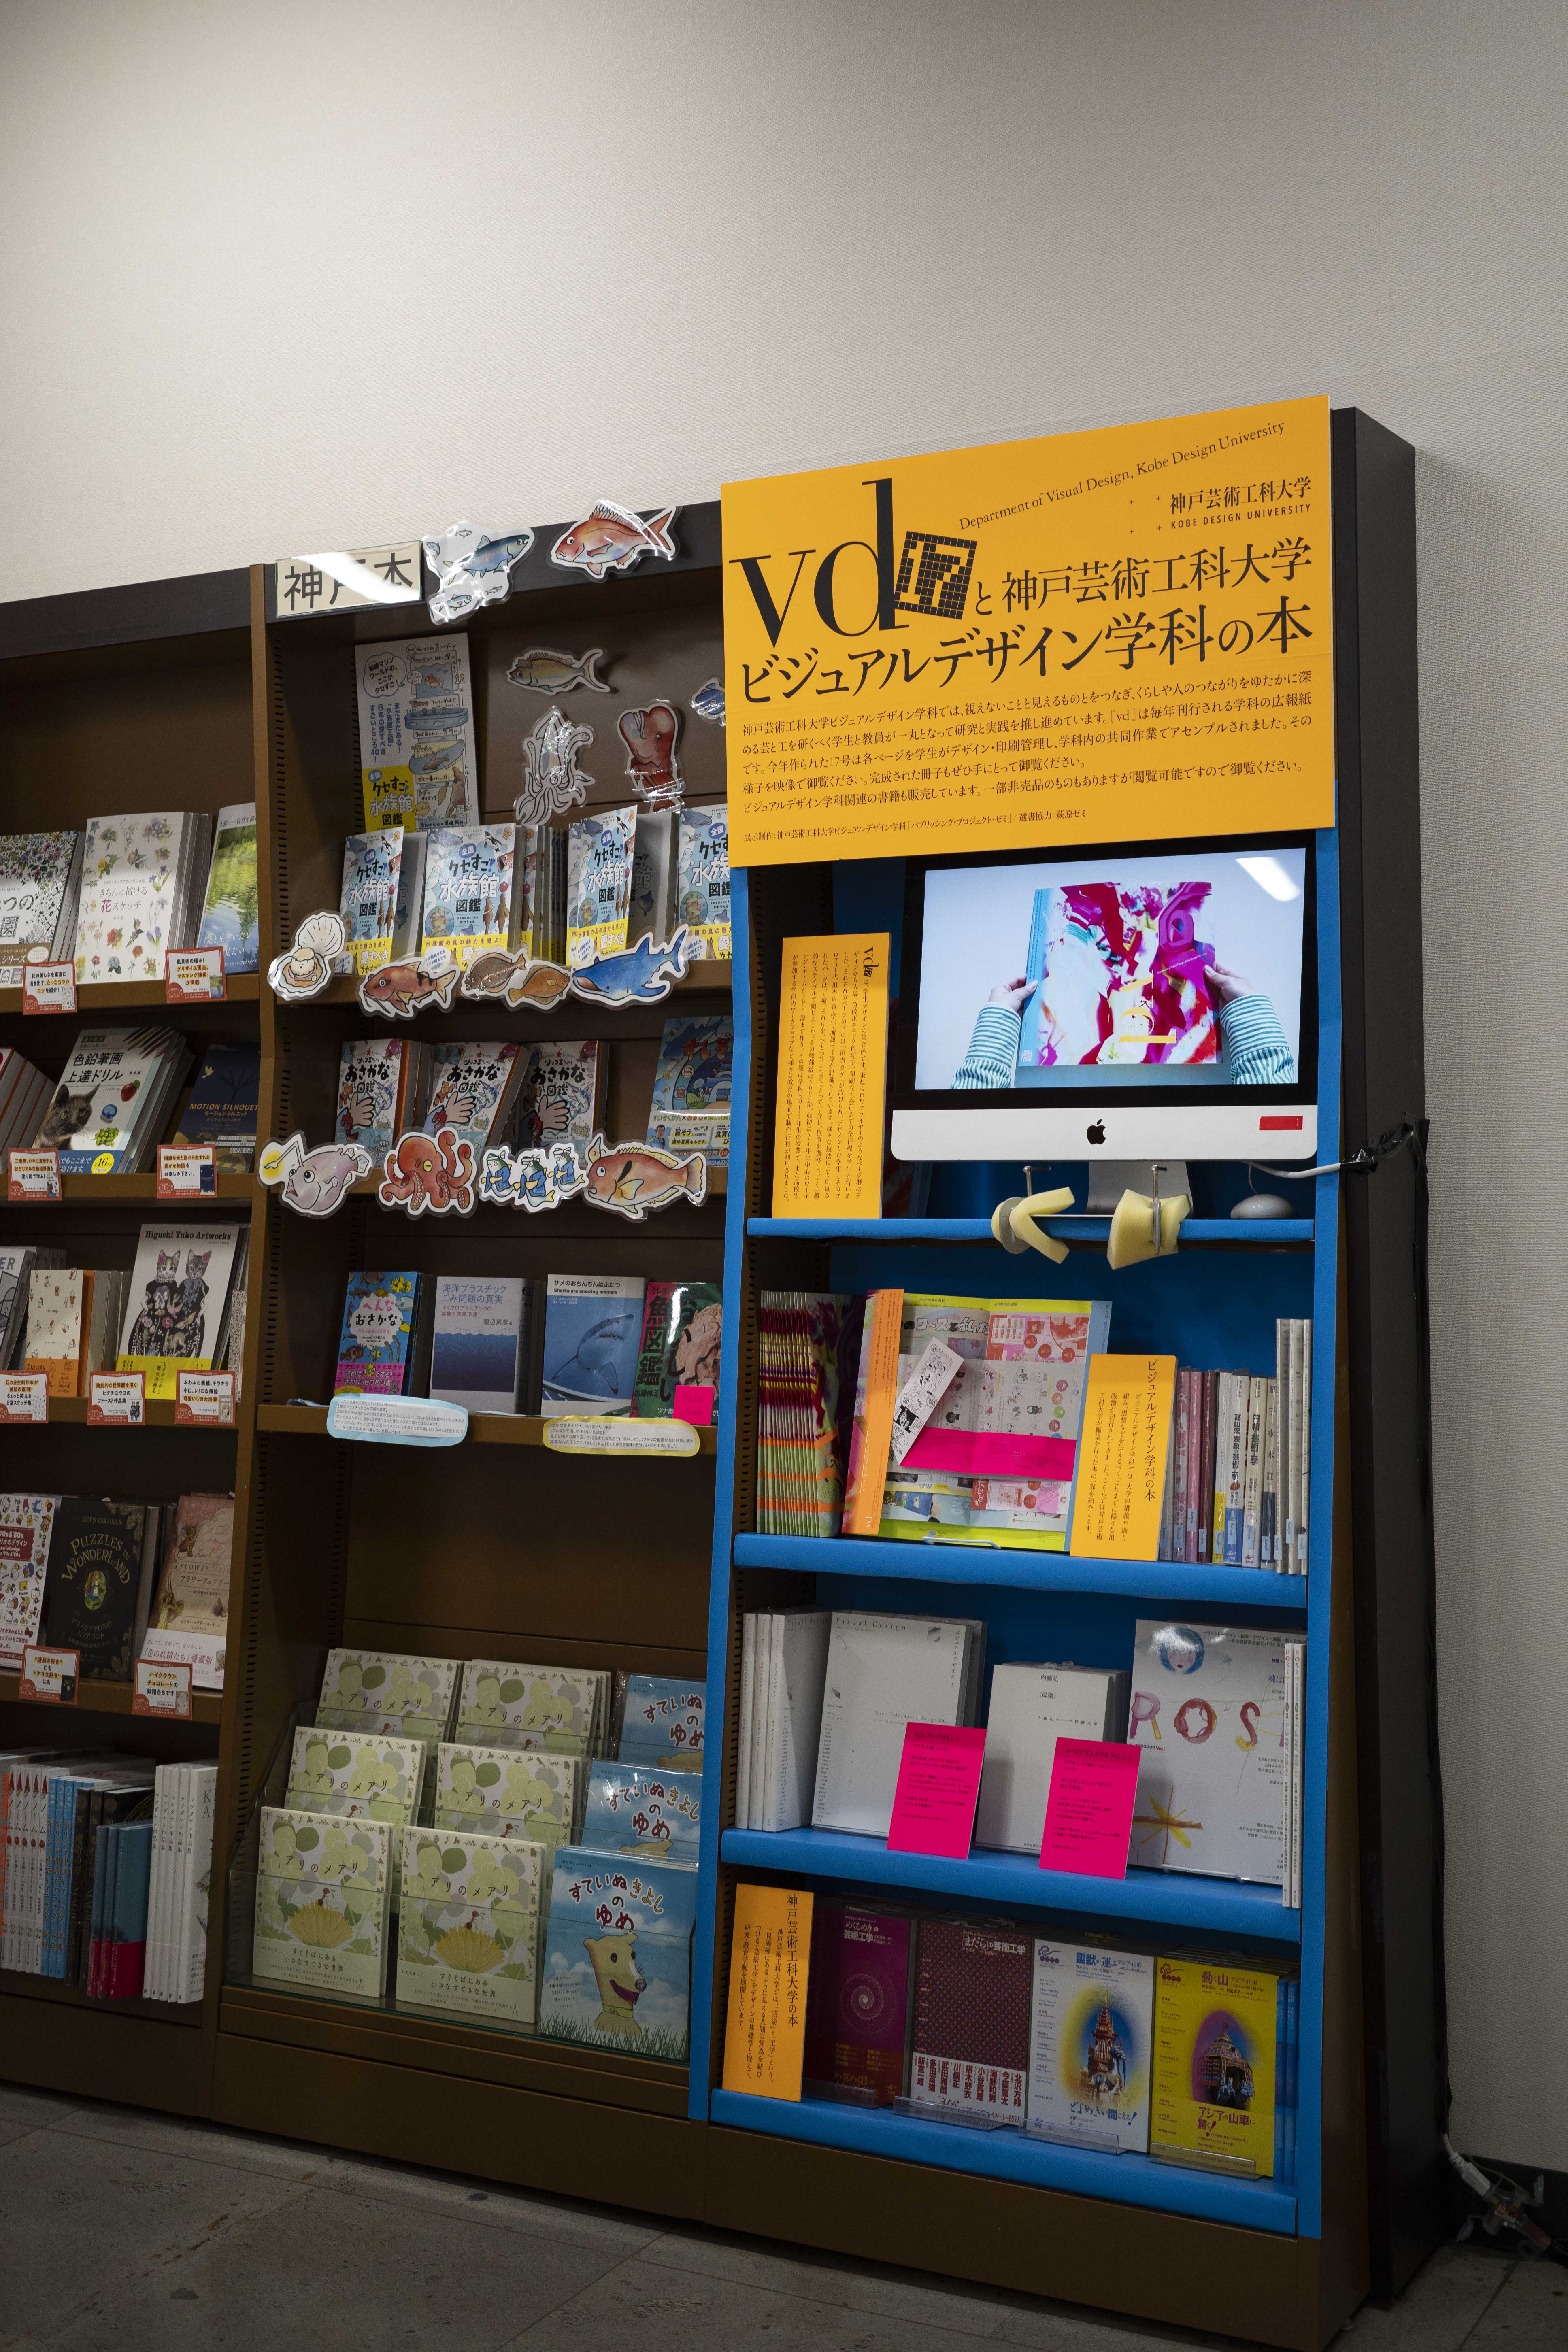 選書ディスプレイ企画『vd_17』と神戸芸術工科大学 ビジュアルデザイン学科の本